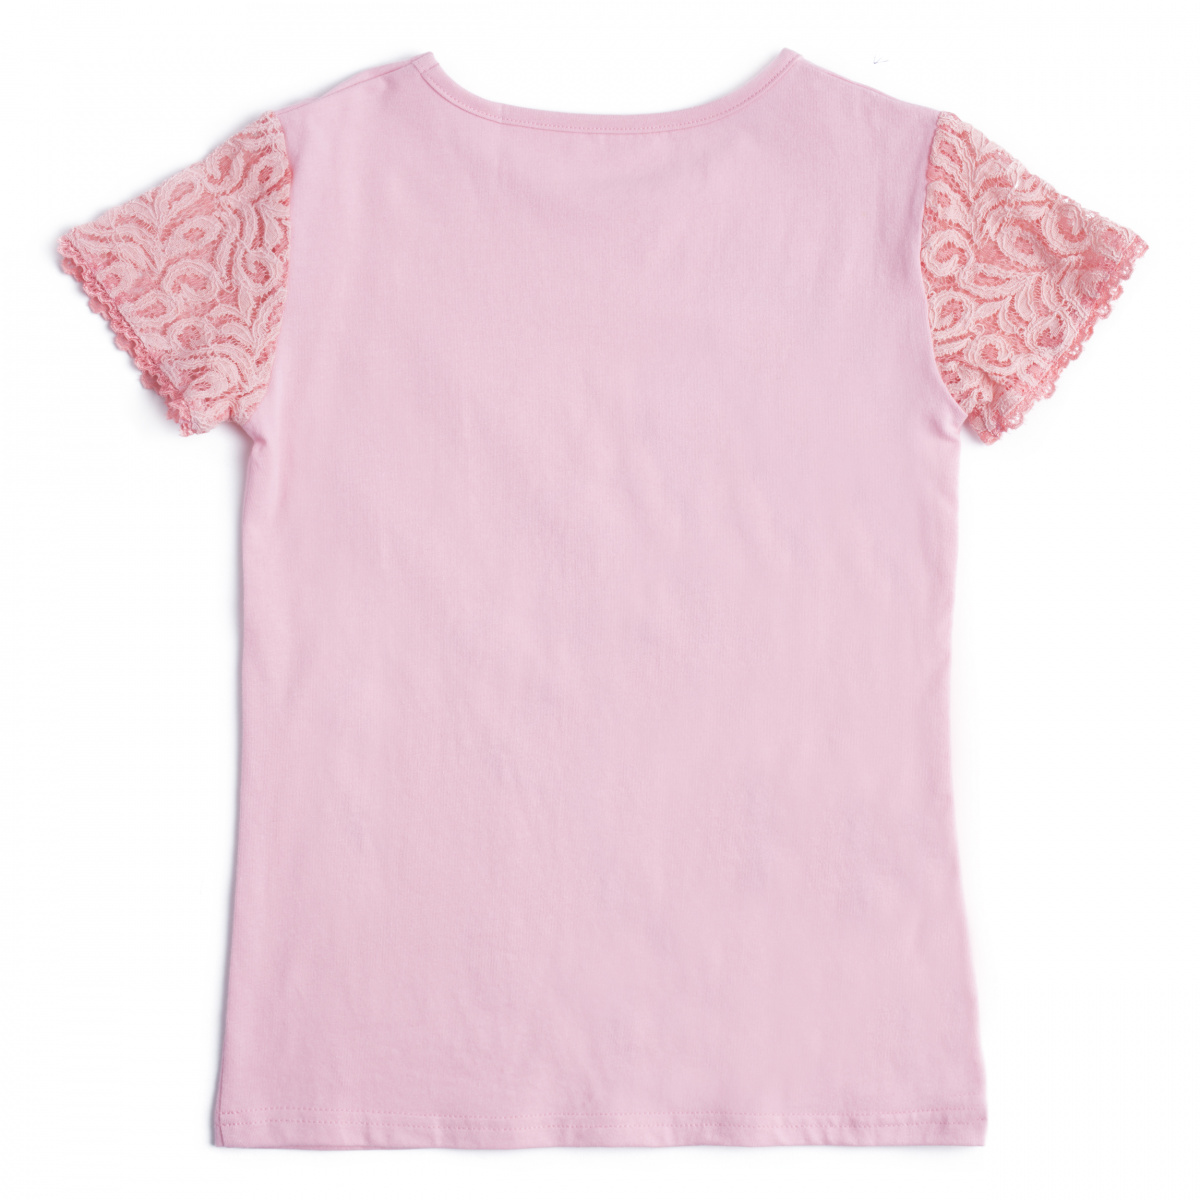 Розовая футболка для девочки. Черная футболка PLAYTODAY для девочки Sweet.